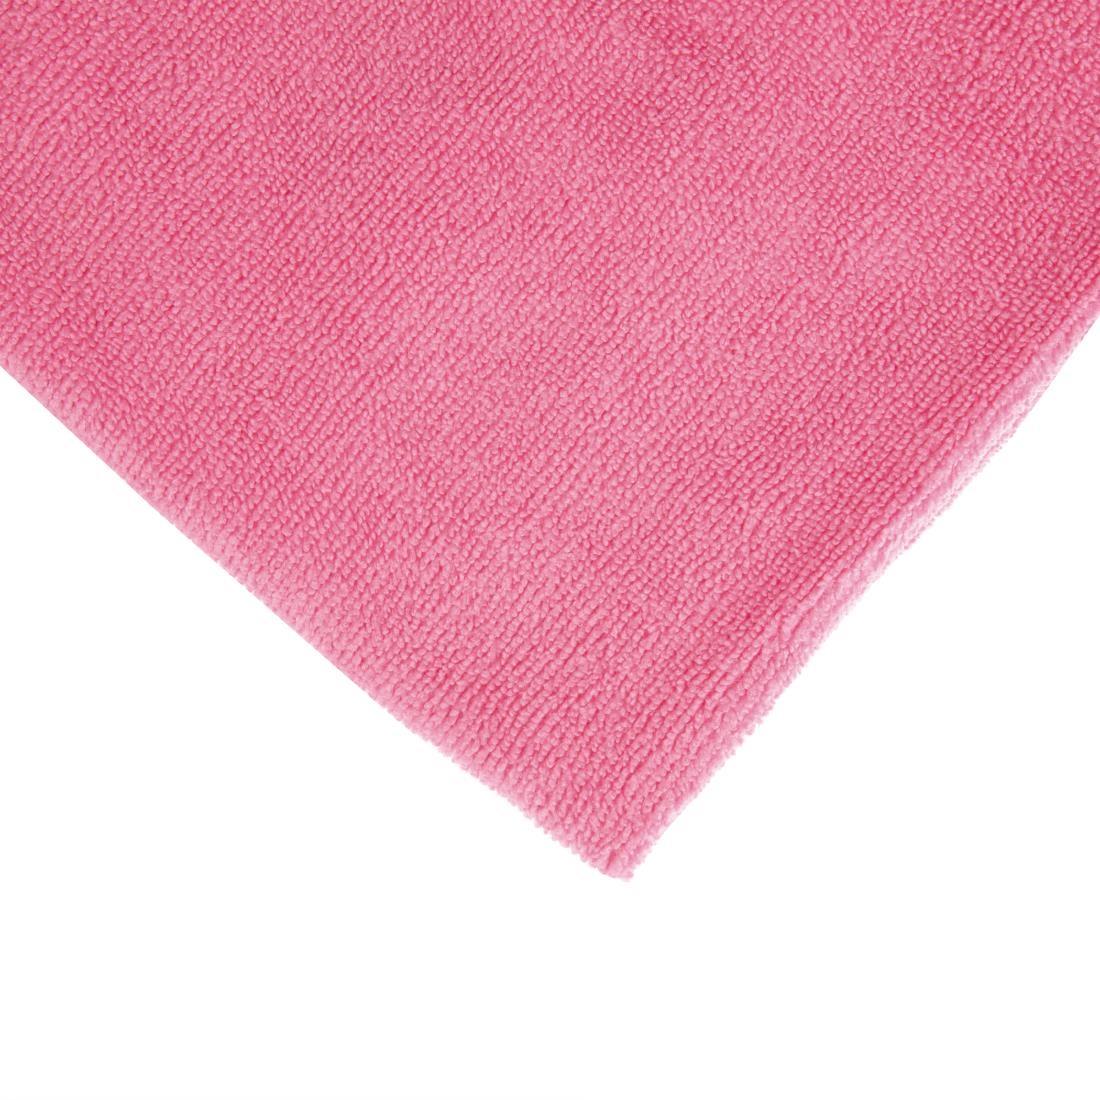 Jantex Microfibre Cloths Pink (Pack of 5) - DN840  - 4